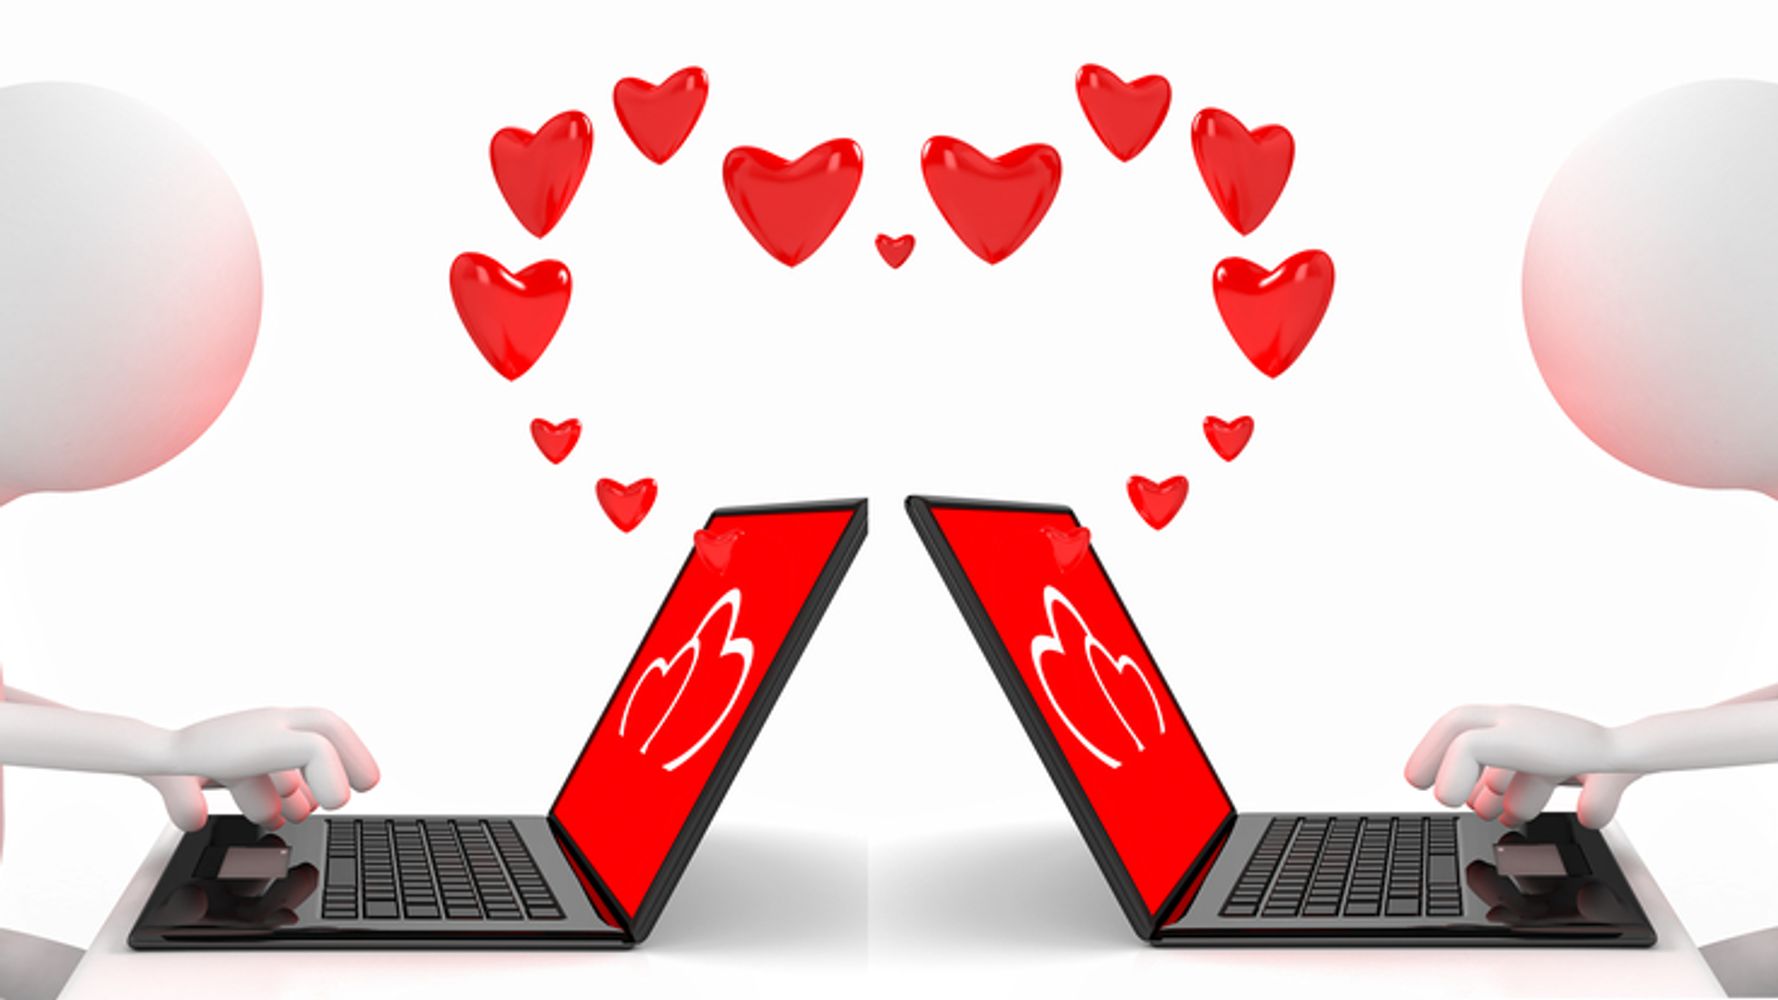 Есть сайт для общения. Интернет любовь. Интернетная любовь. Виртуальная любовь в сети. Общение в интернете мультяшное изображение.